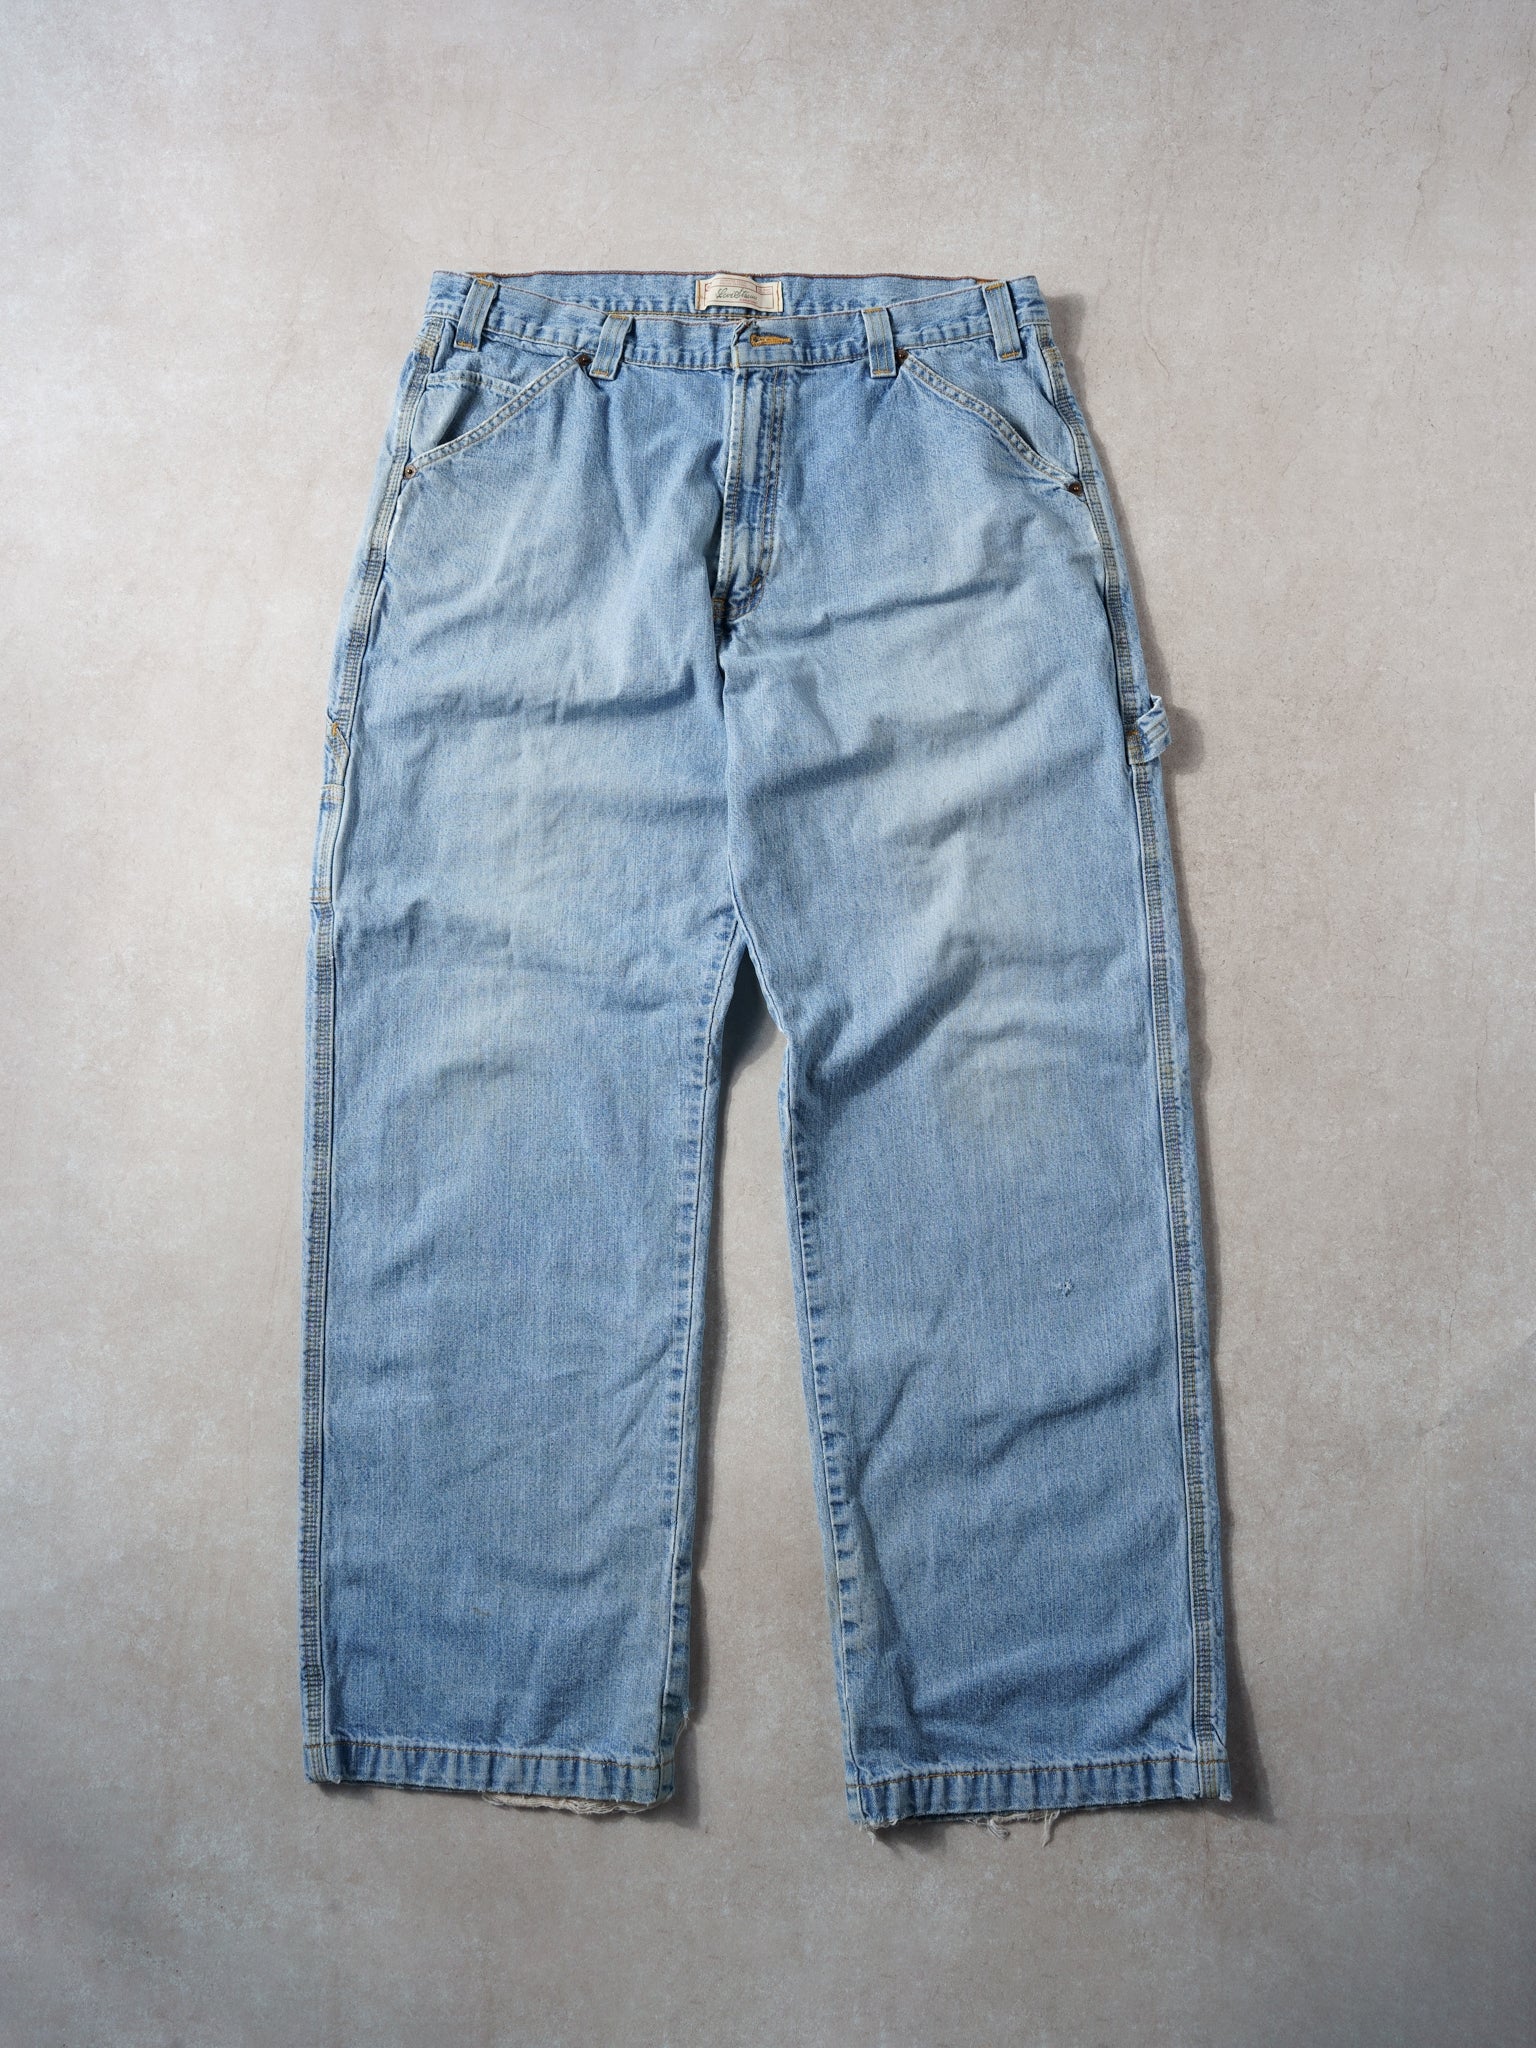 Vintage 90s Light Wash Levi's Denim Carpenter Pants (36x31)